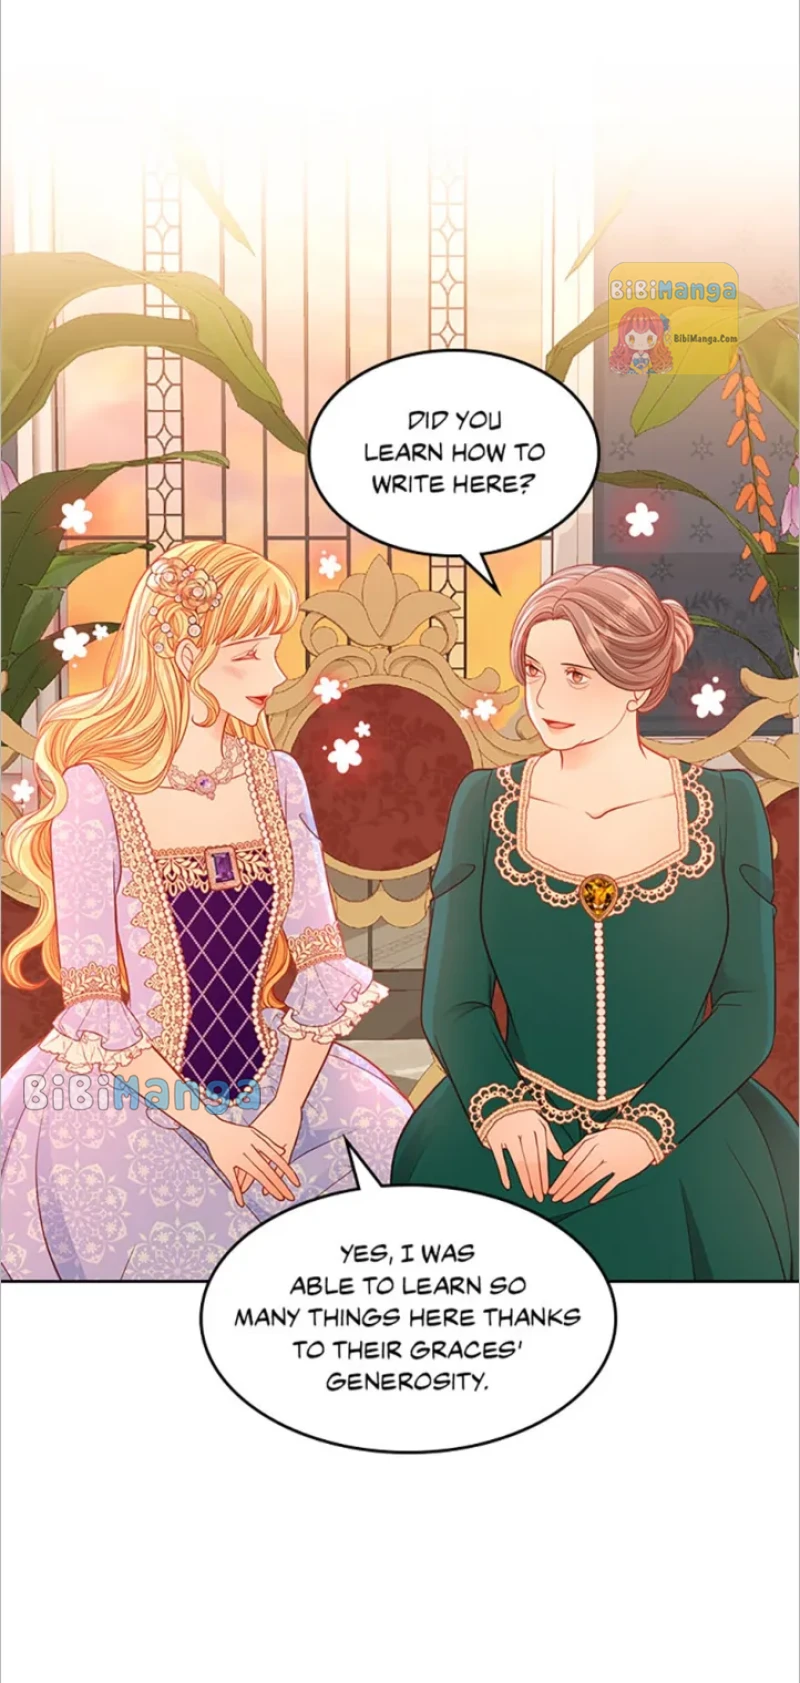 The Duchess’s Secret Dressing Room chapter 43